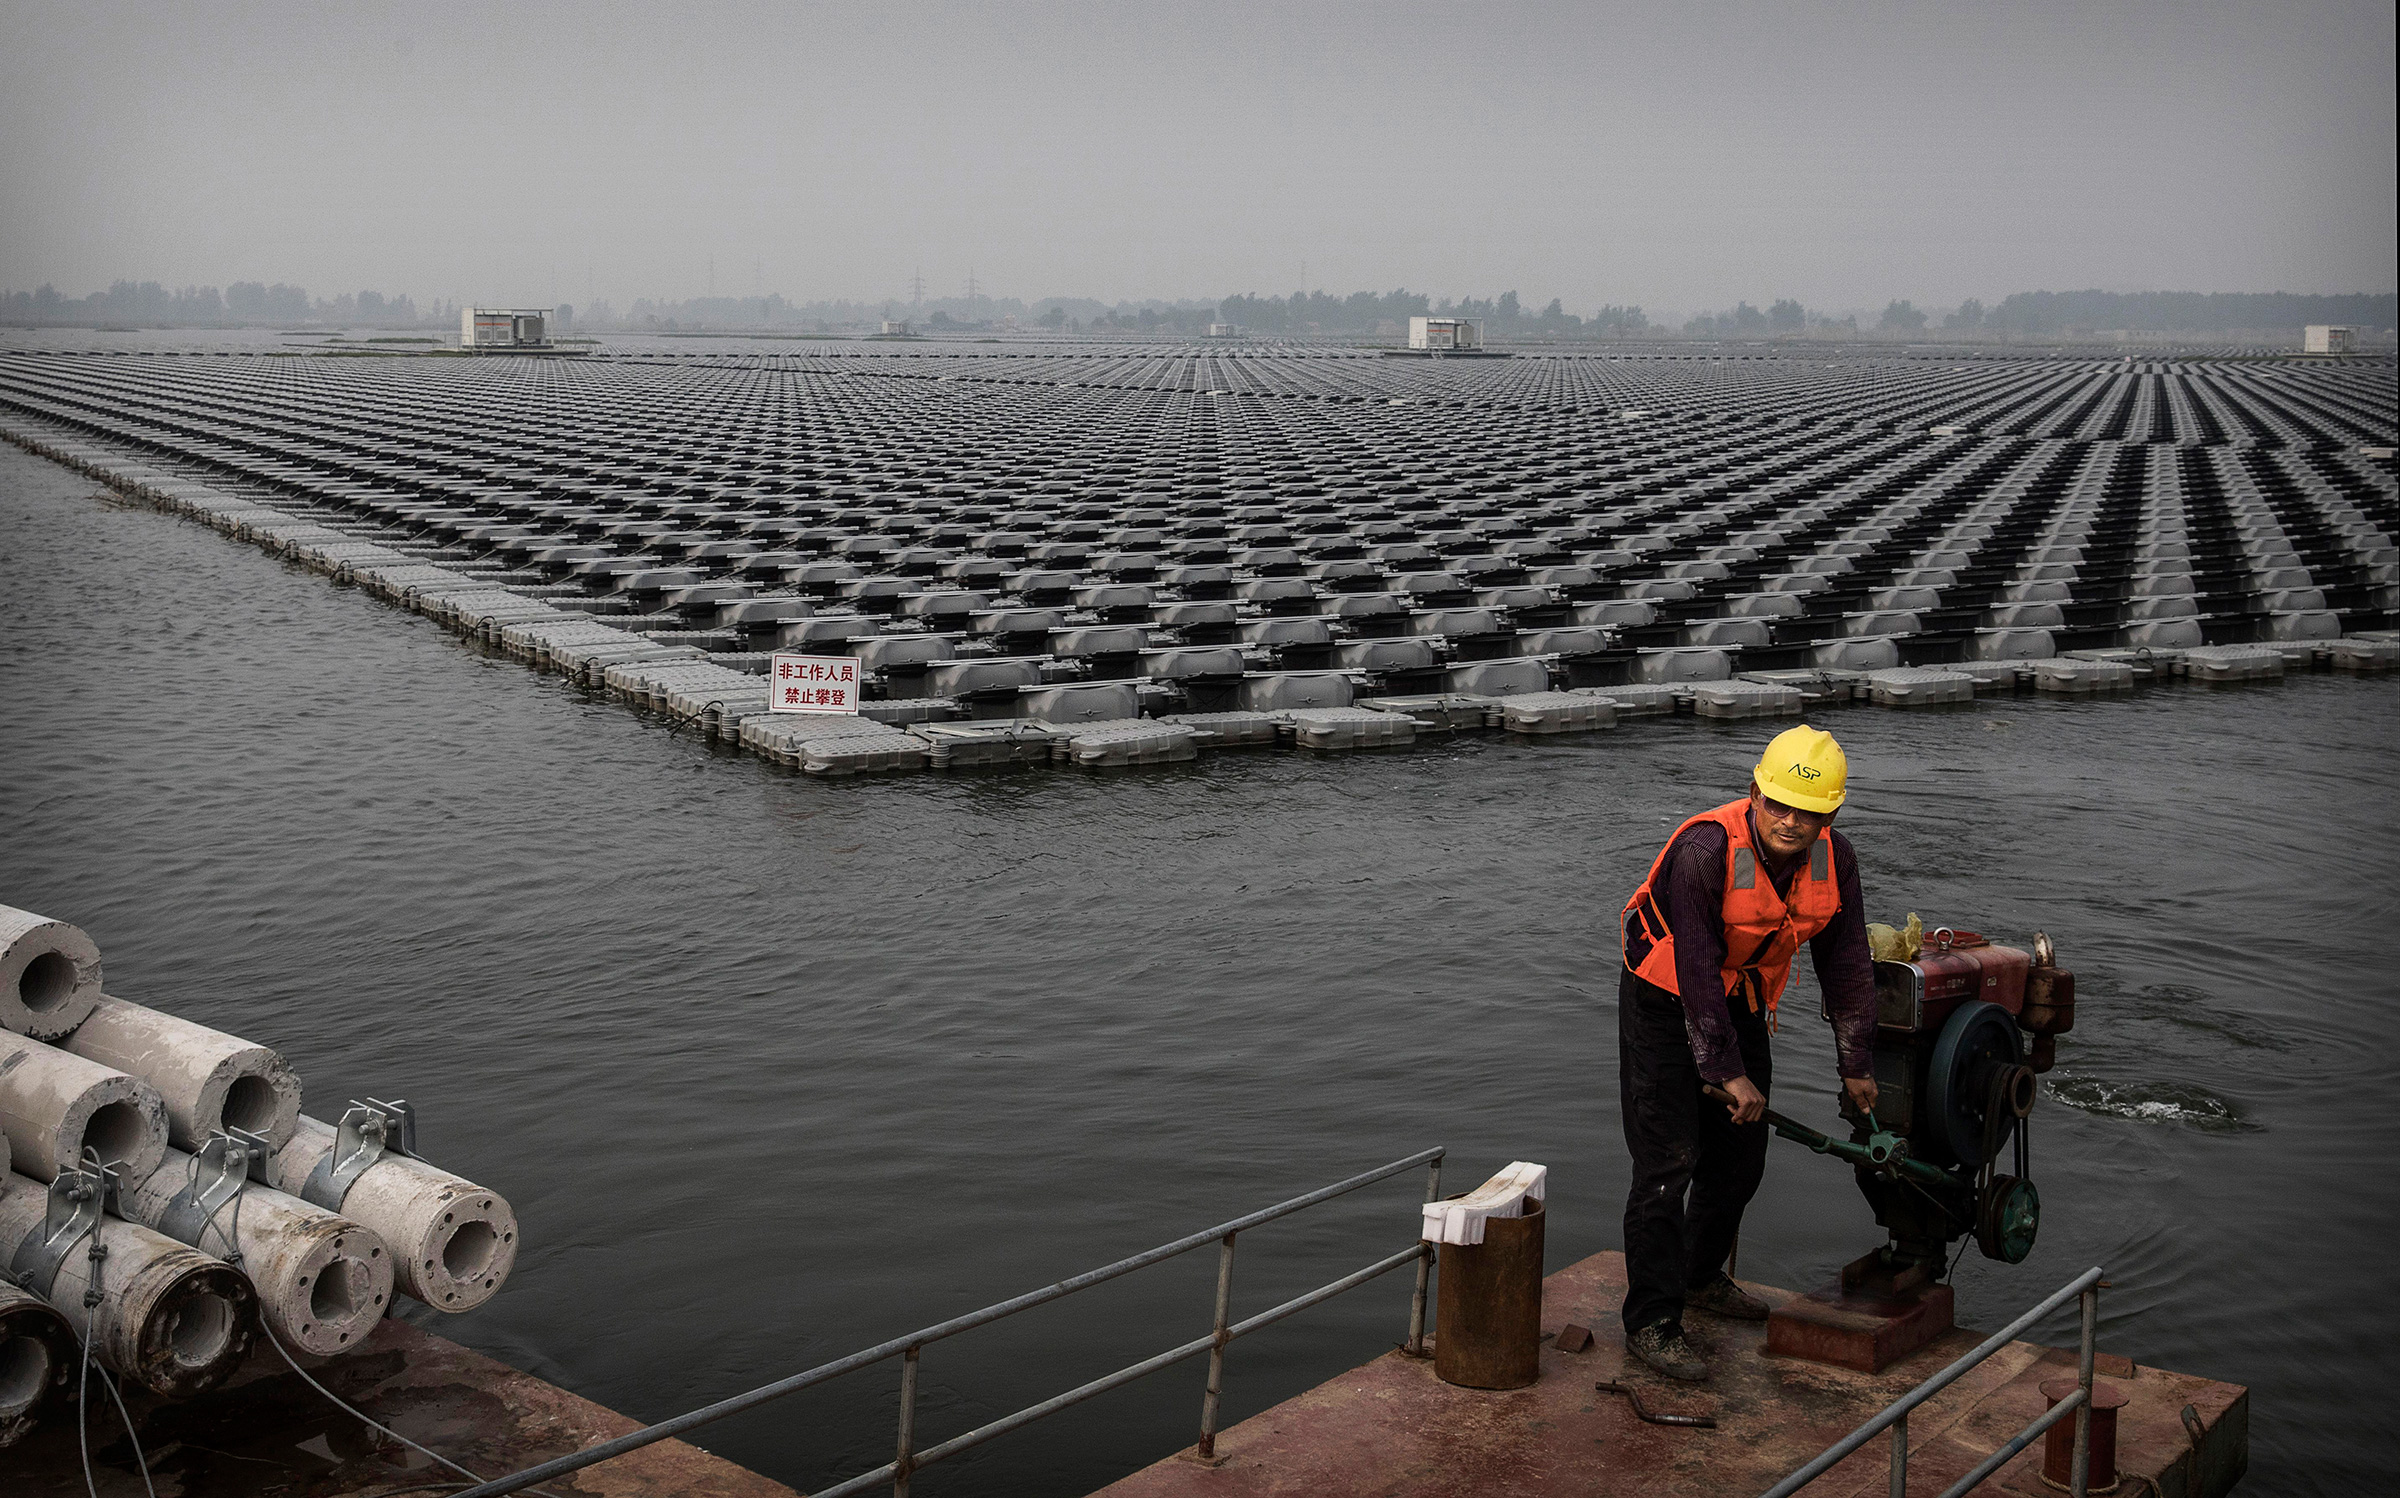 В настоящее время Китай &mdash; крупнейший в мире инвестор в области возобновляемых источников энергии
